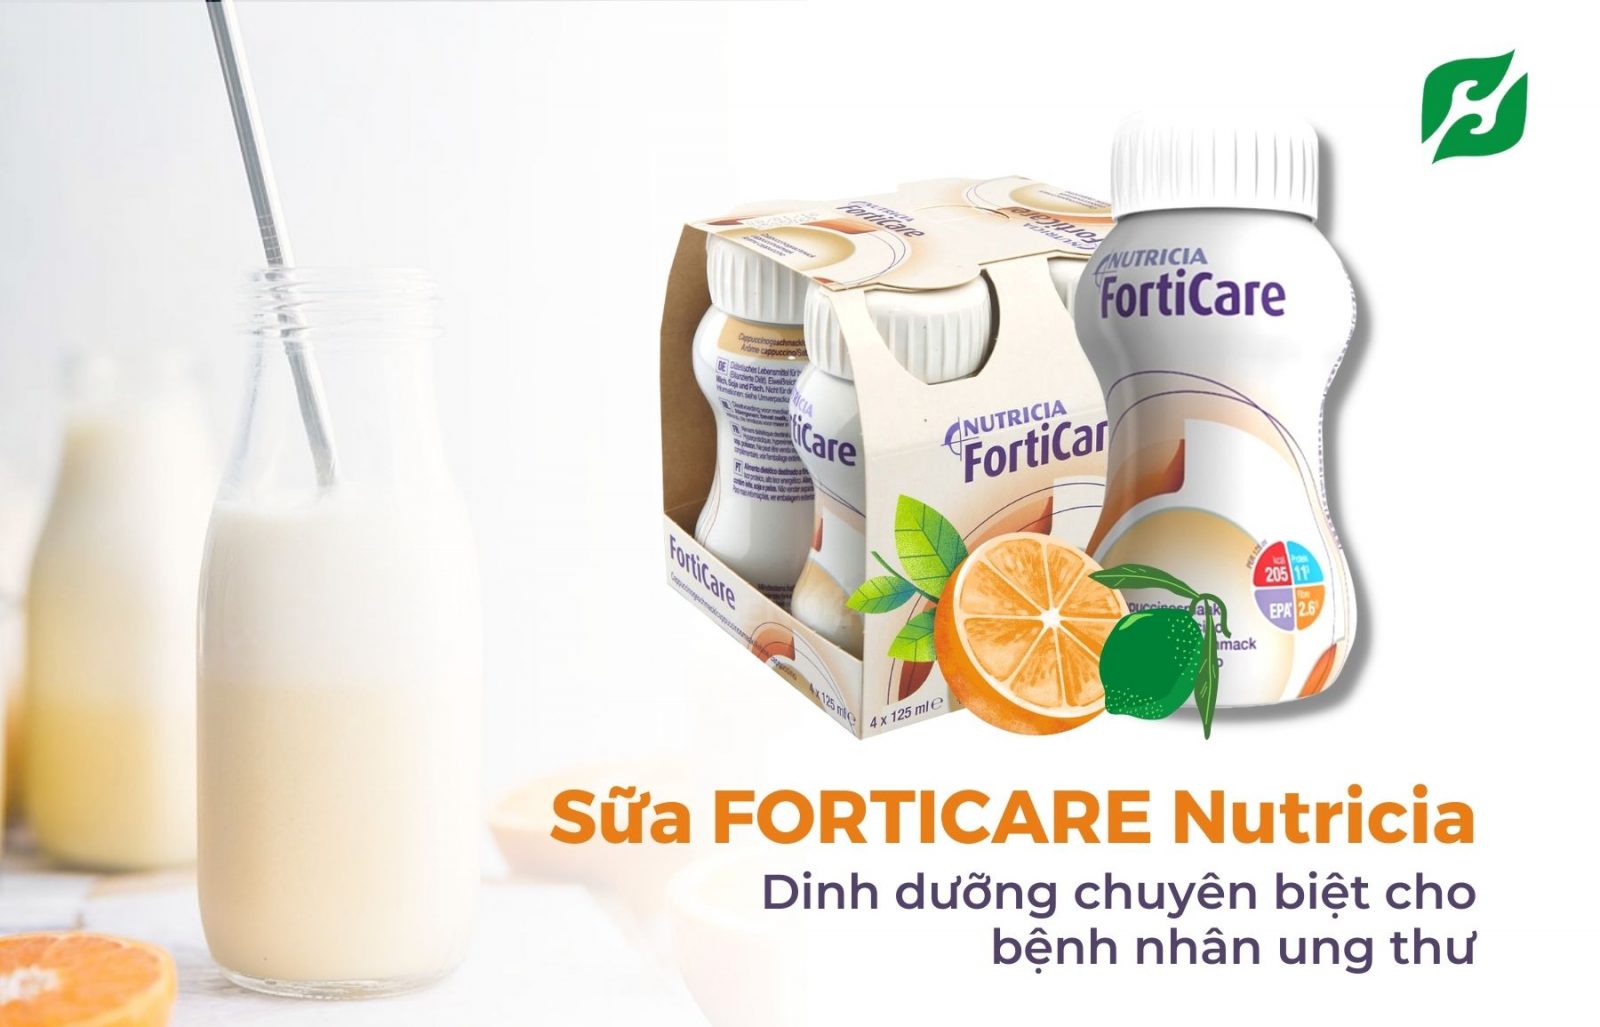 Sữa forticare có công dụng gì? Sữa dành cho bệnh nhân ung thư